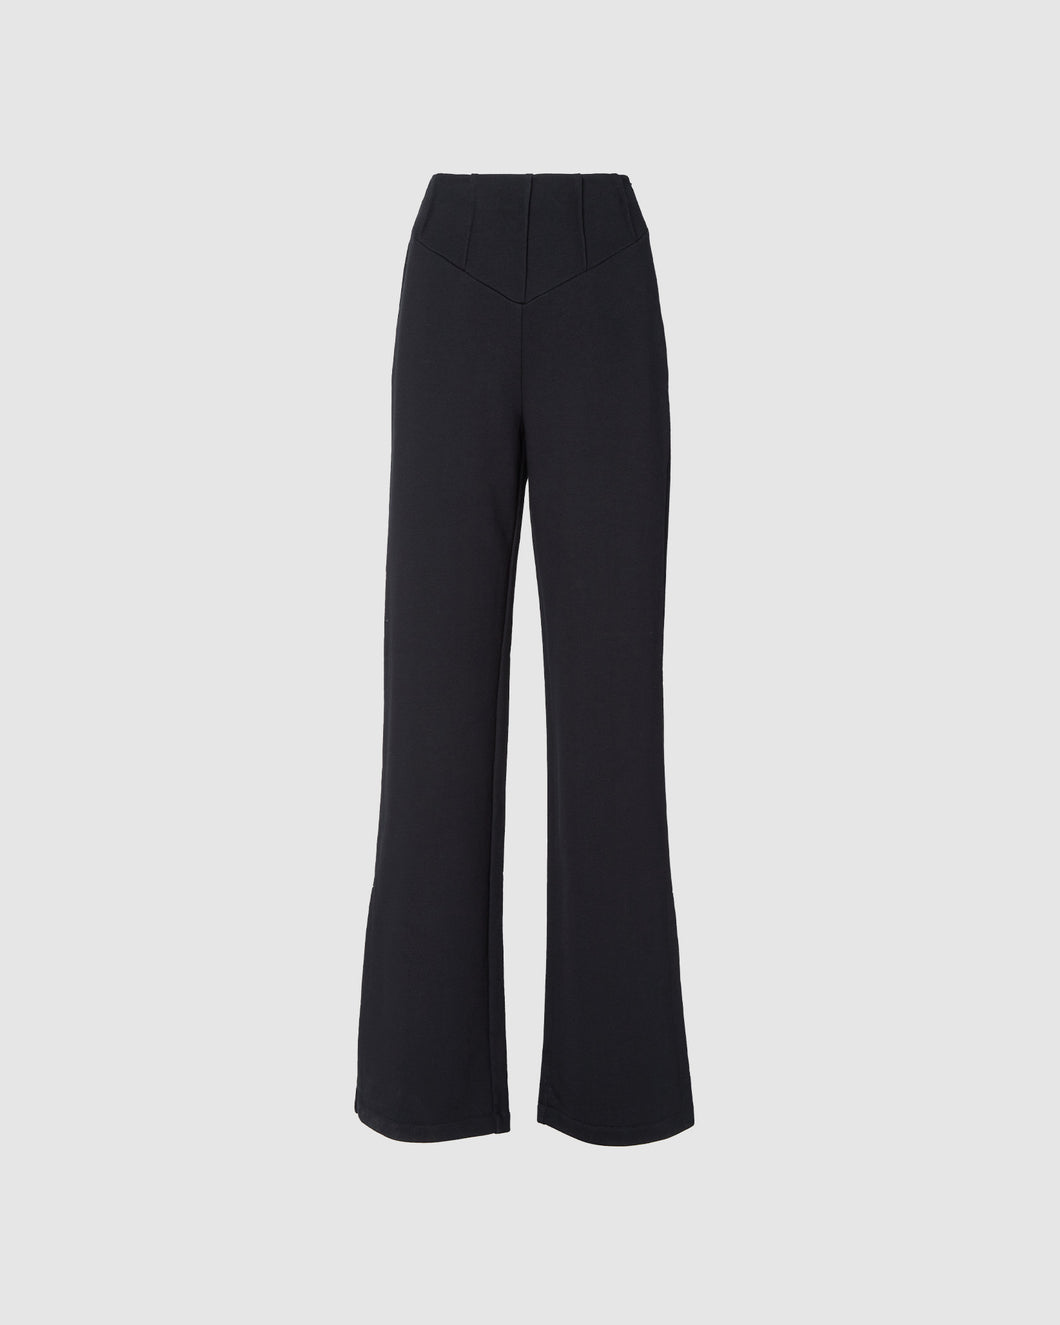 Wide jersey trousers: Women Trousers Black | GCDS